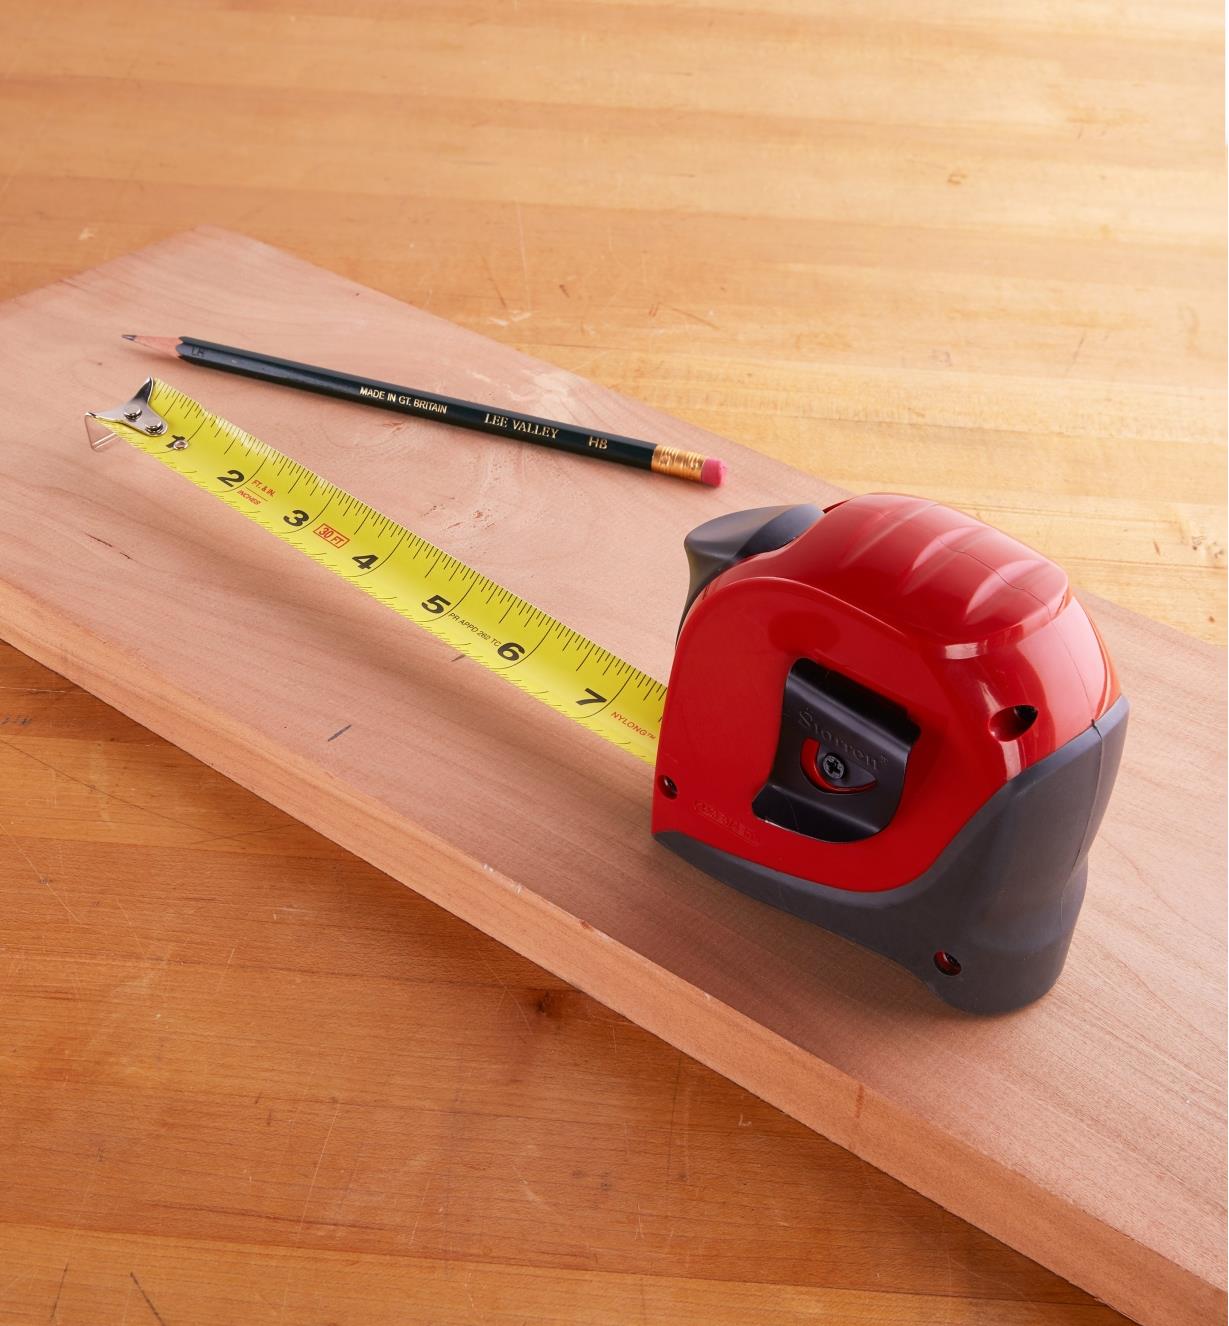 Ruban à mesurer Exact Starrett sur une planche en bois